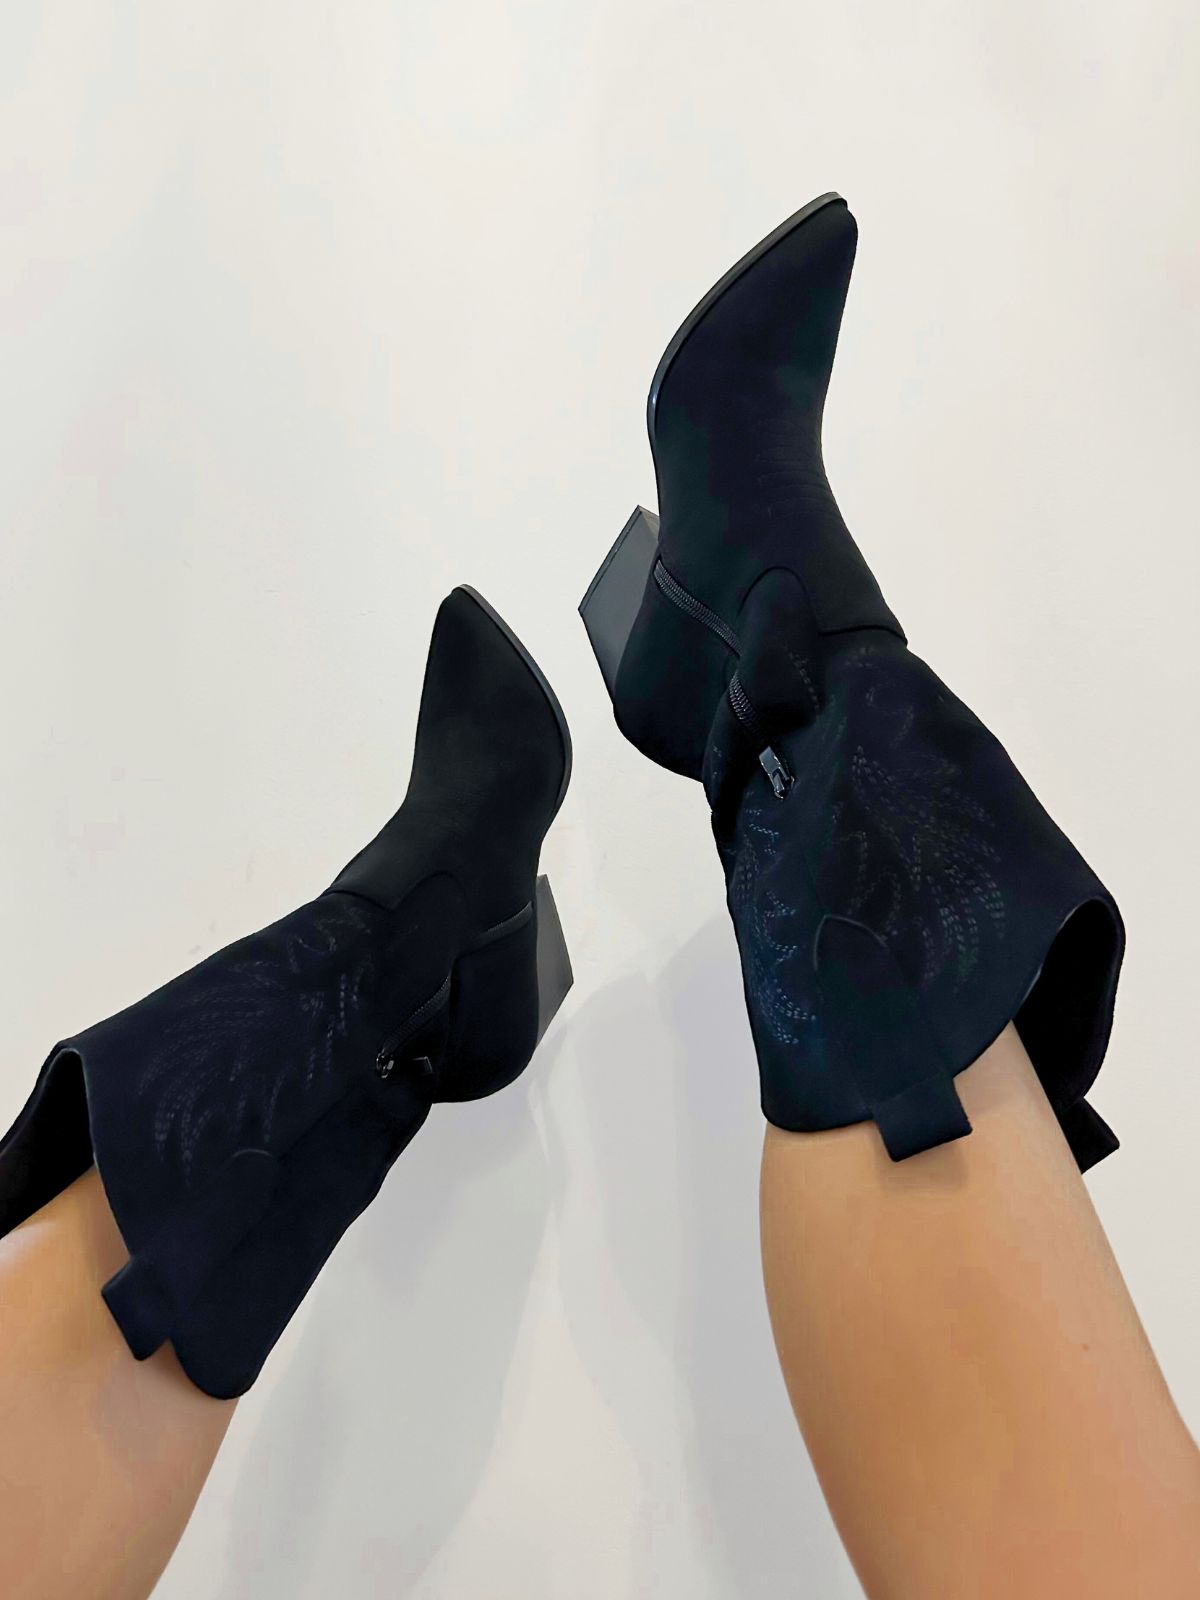 Agnes Cowboy Style Boots / Black